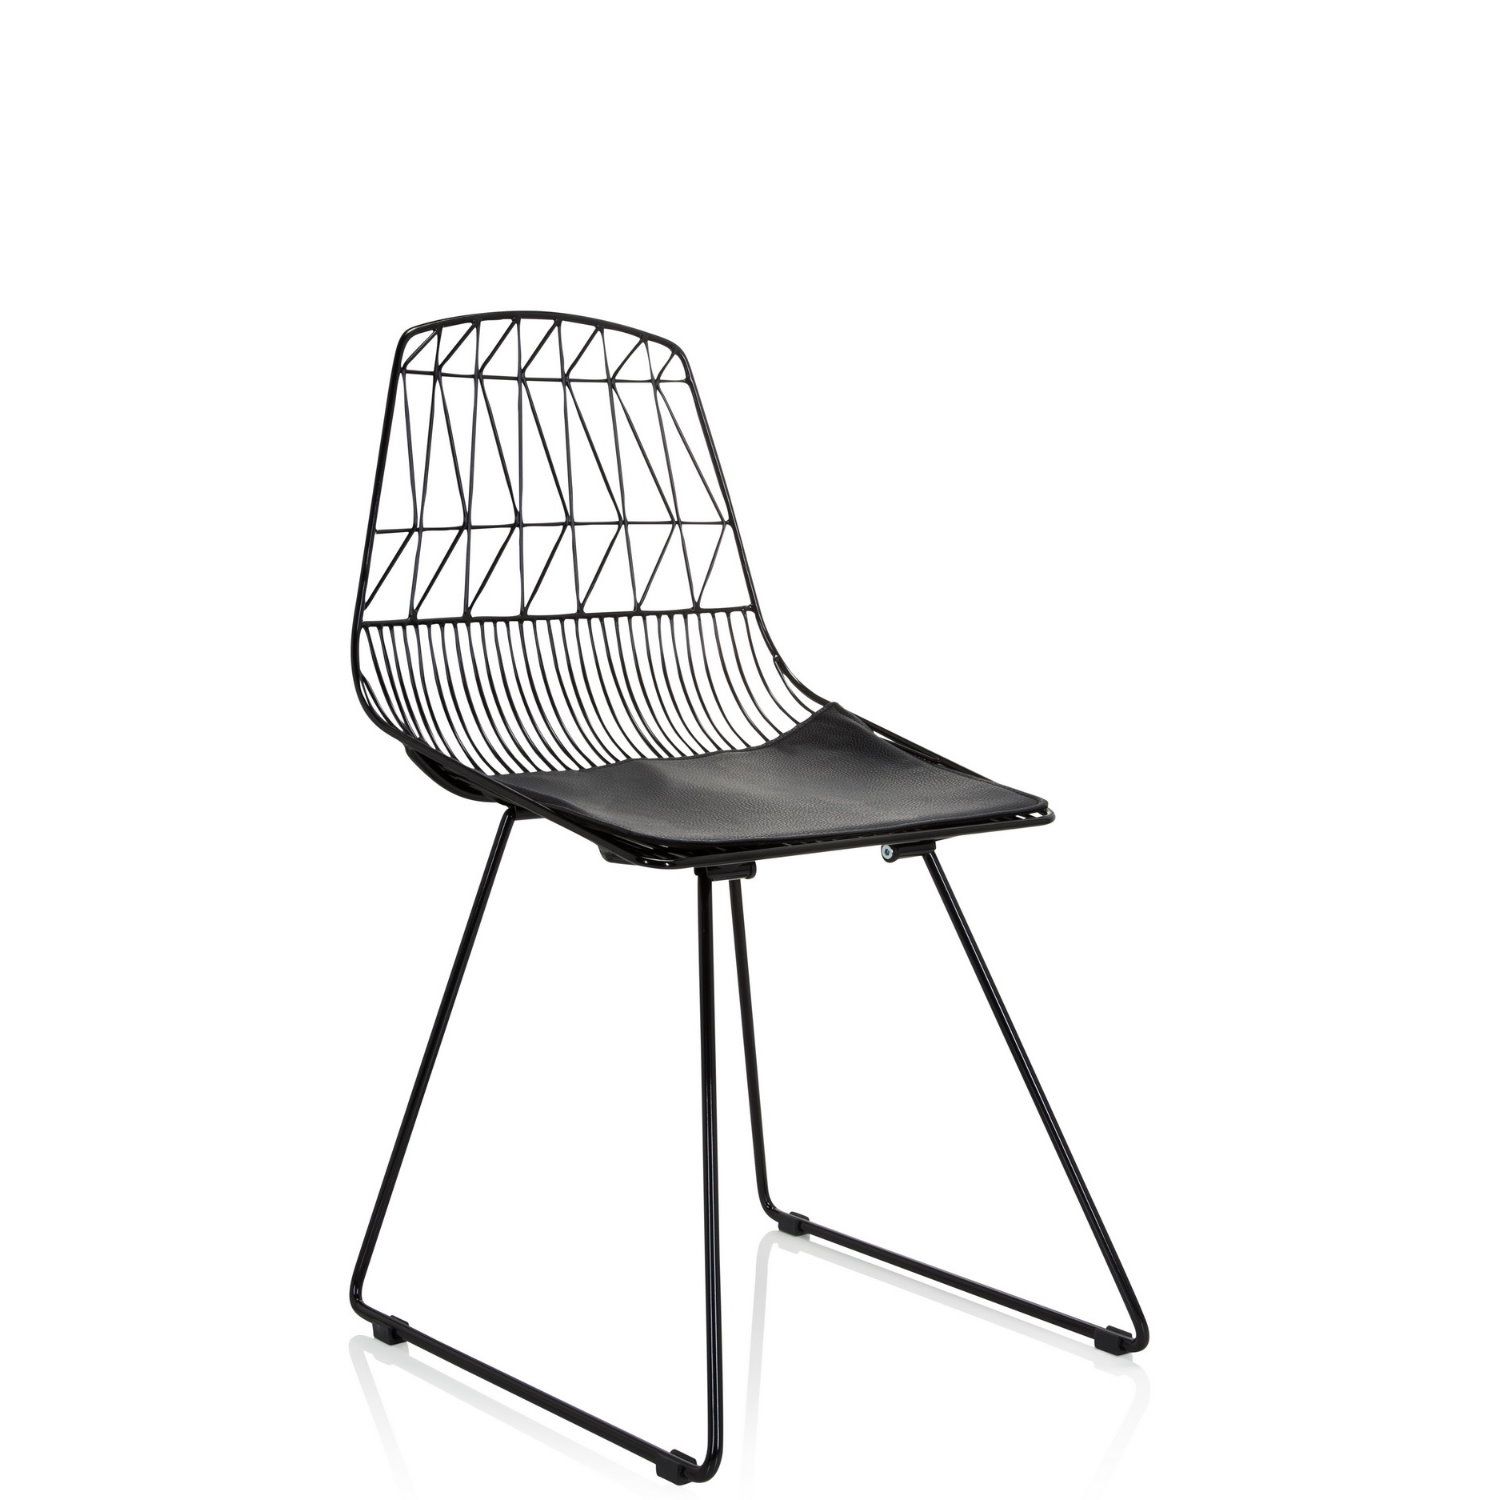 Metall-Stuhl / Living Stuhl WIREA mit Sitzkissen weiß hjh OFFICE